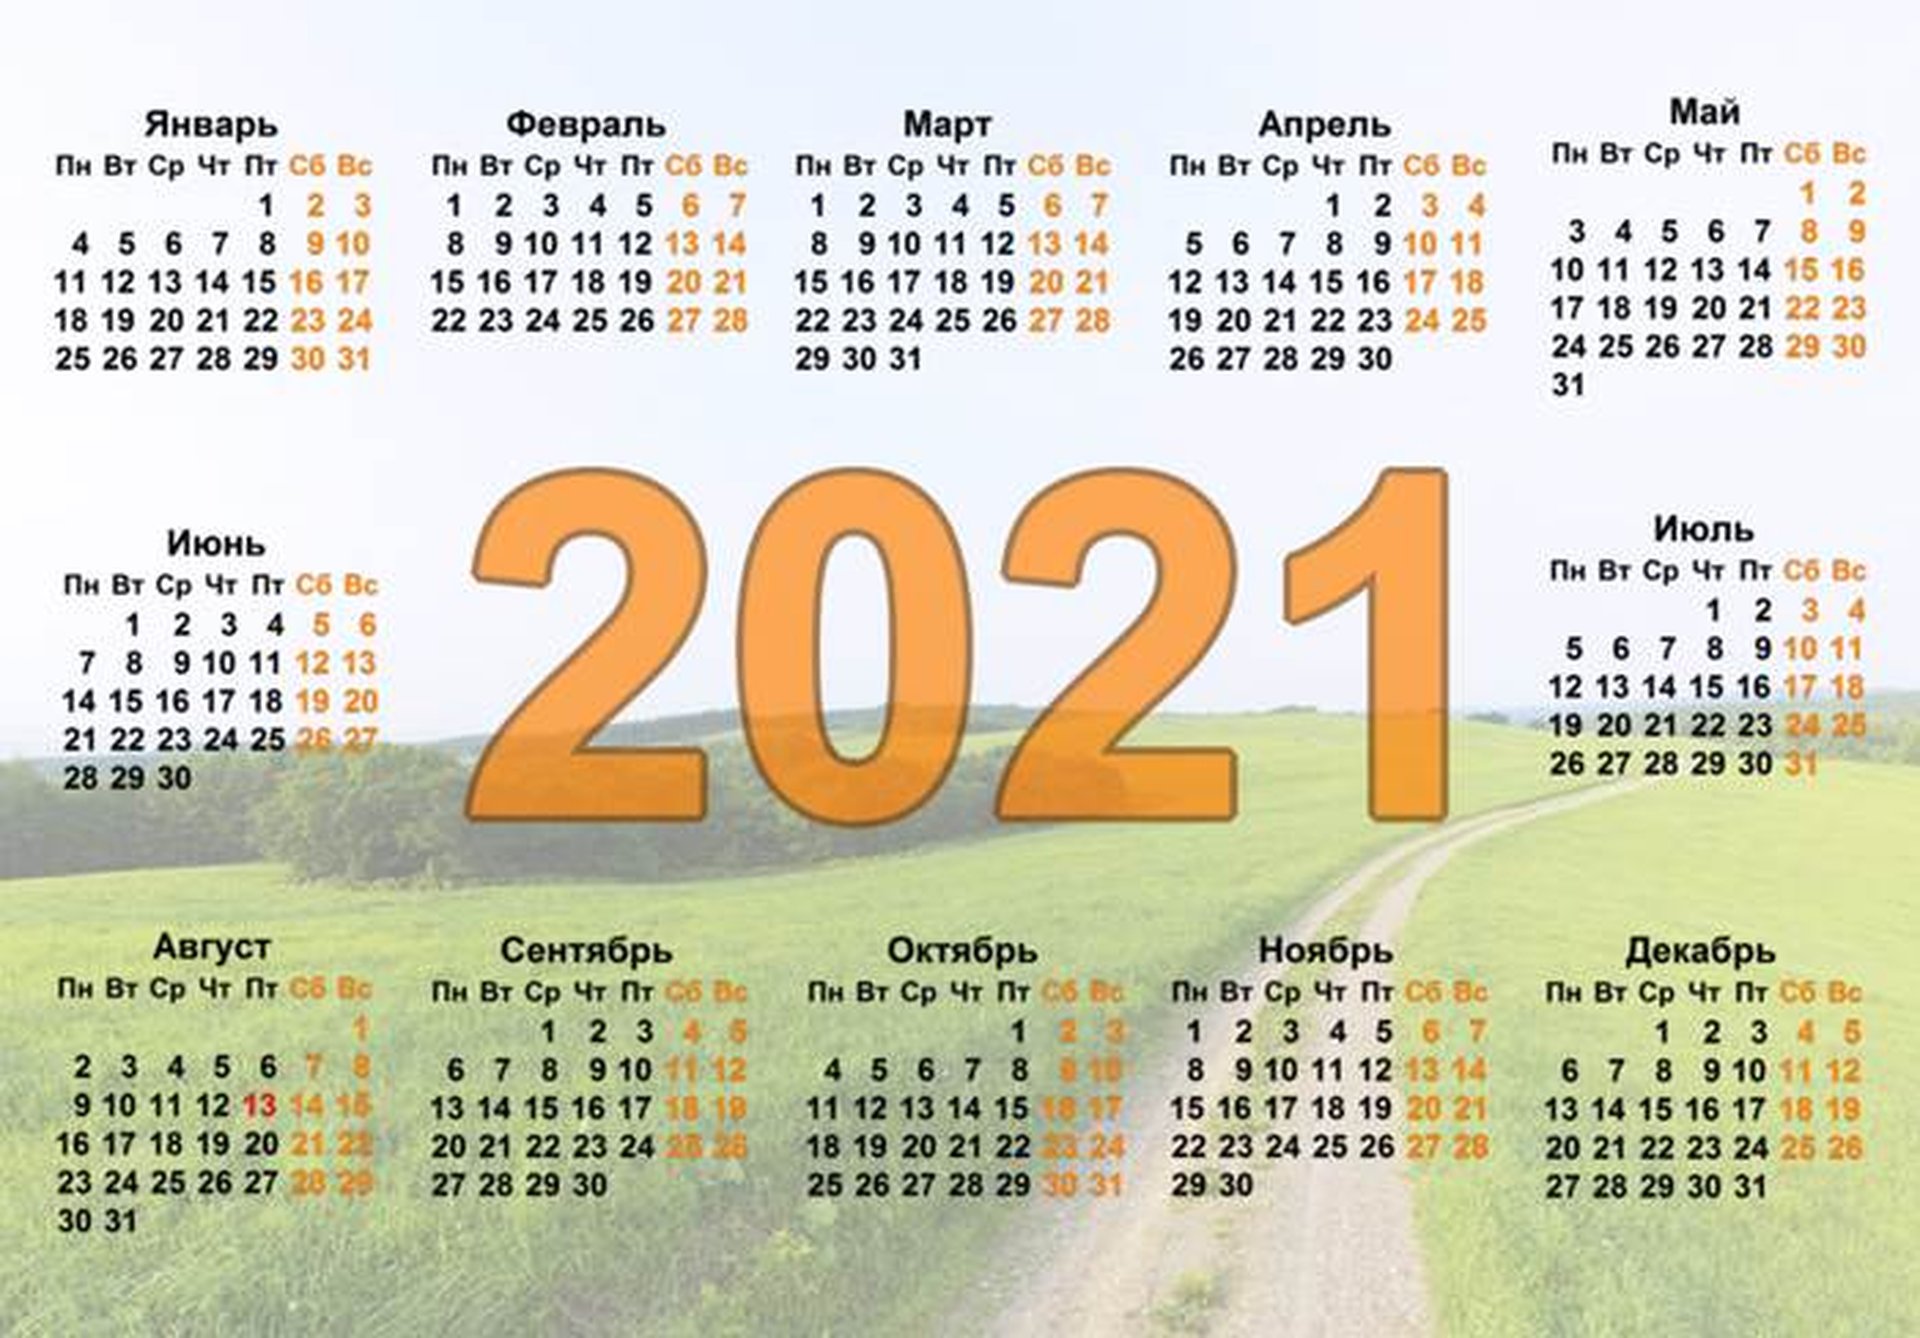 Сколько дней до 6 апреля. Календарь 2021 года. Календарь на 2021 год с праздниками. Когда будет пятница 13 в 2021 году.